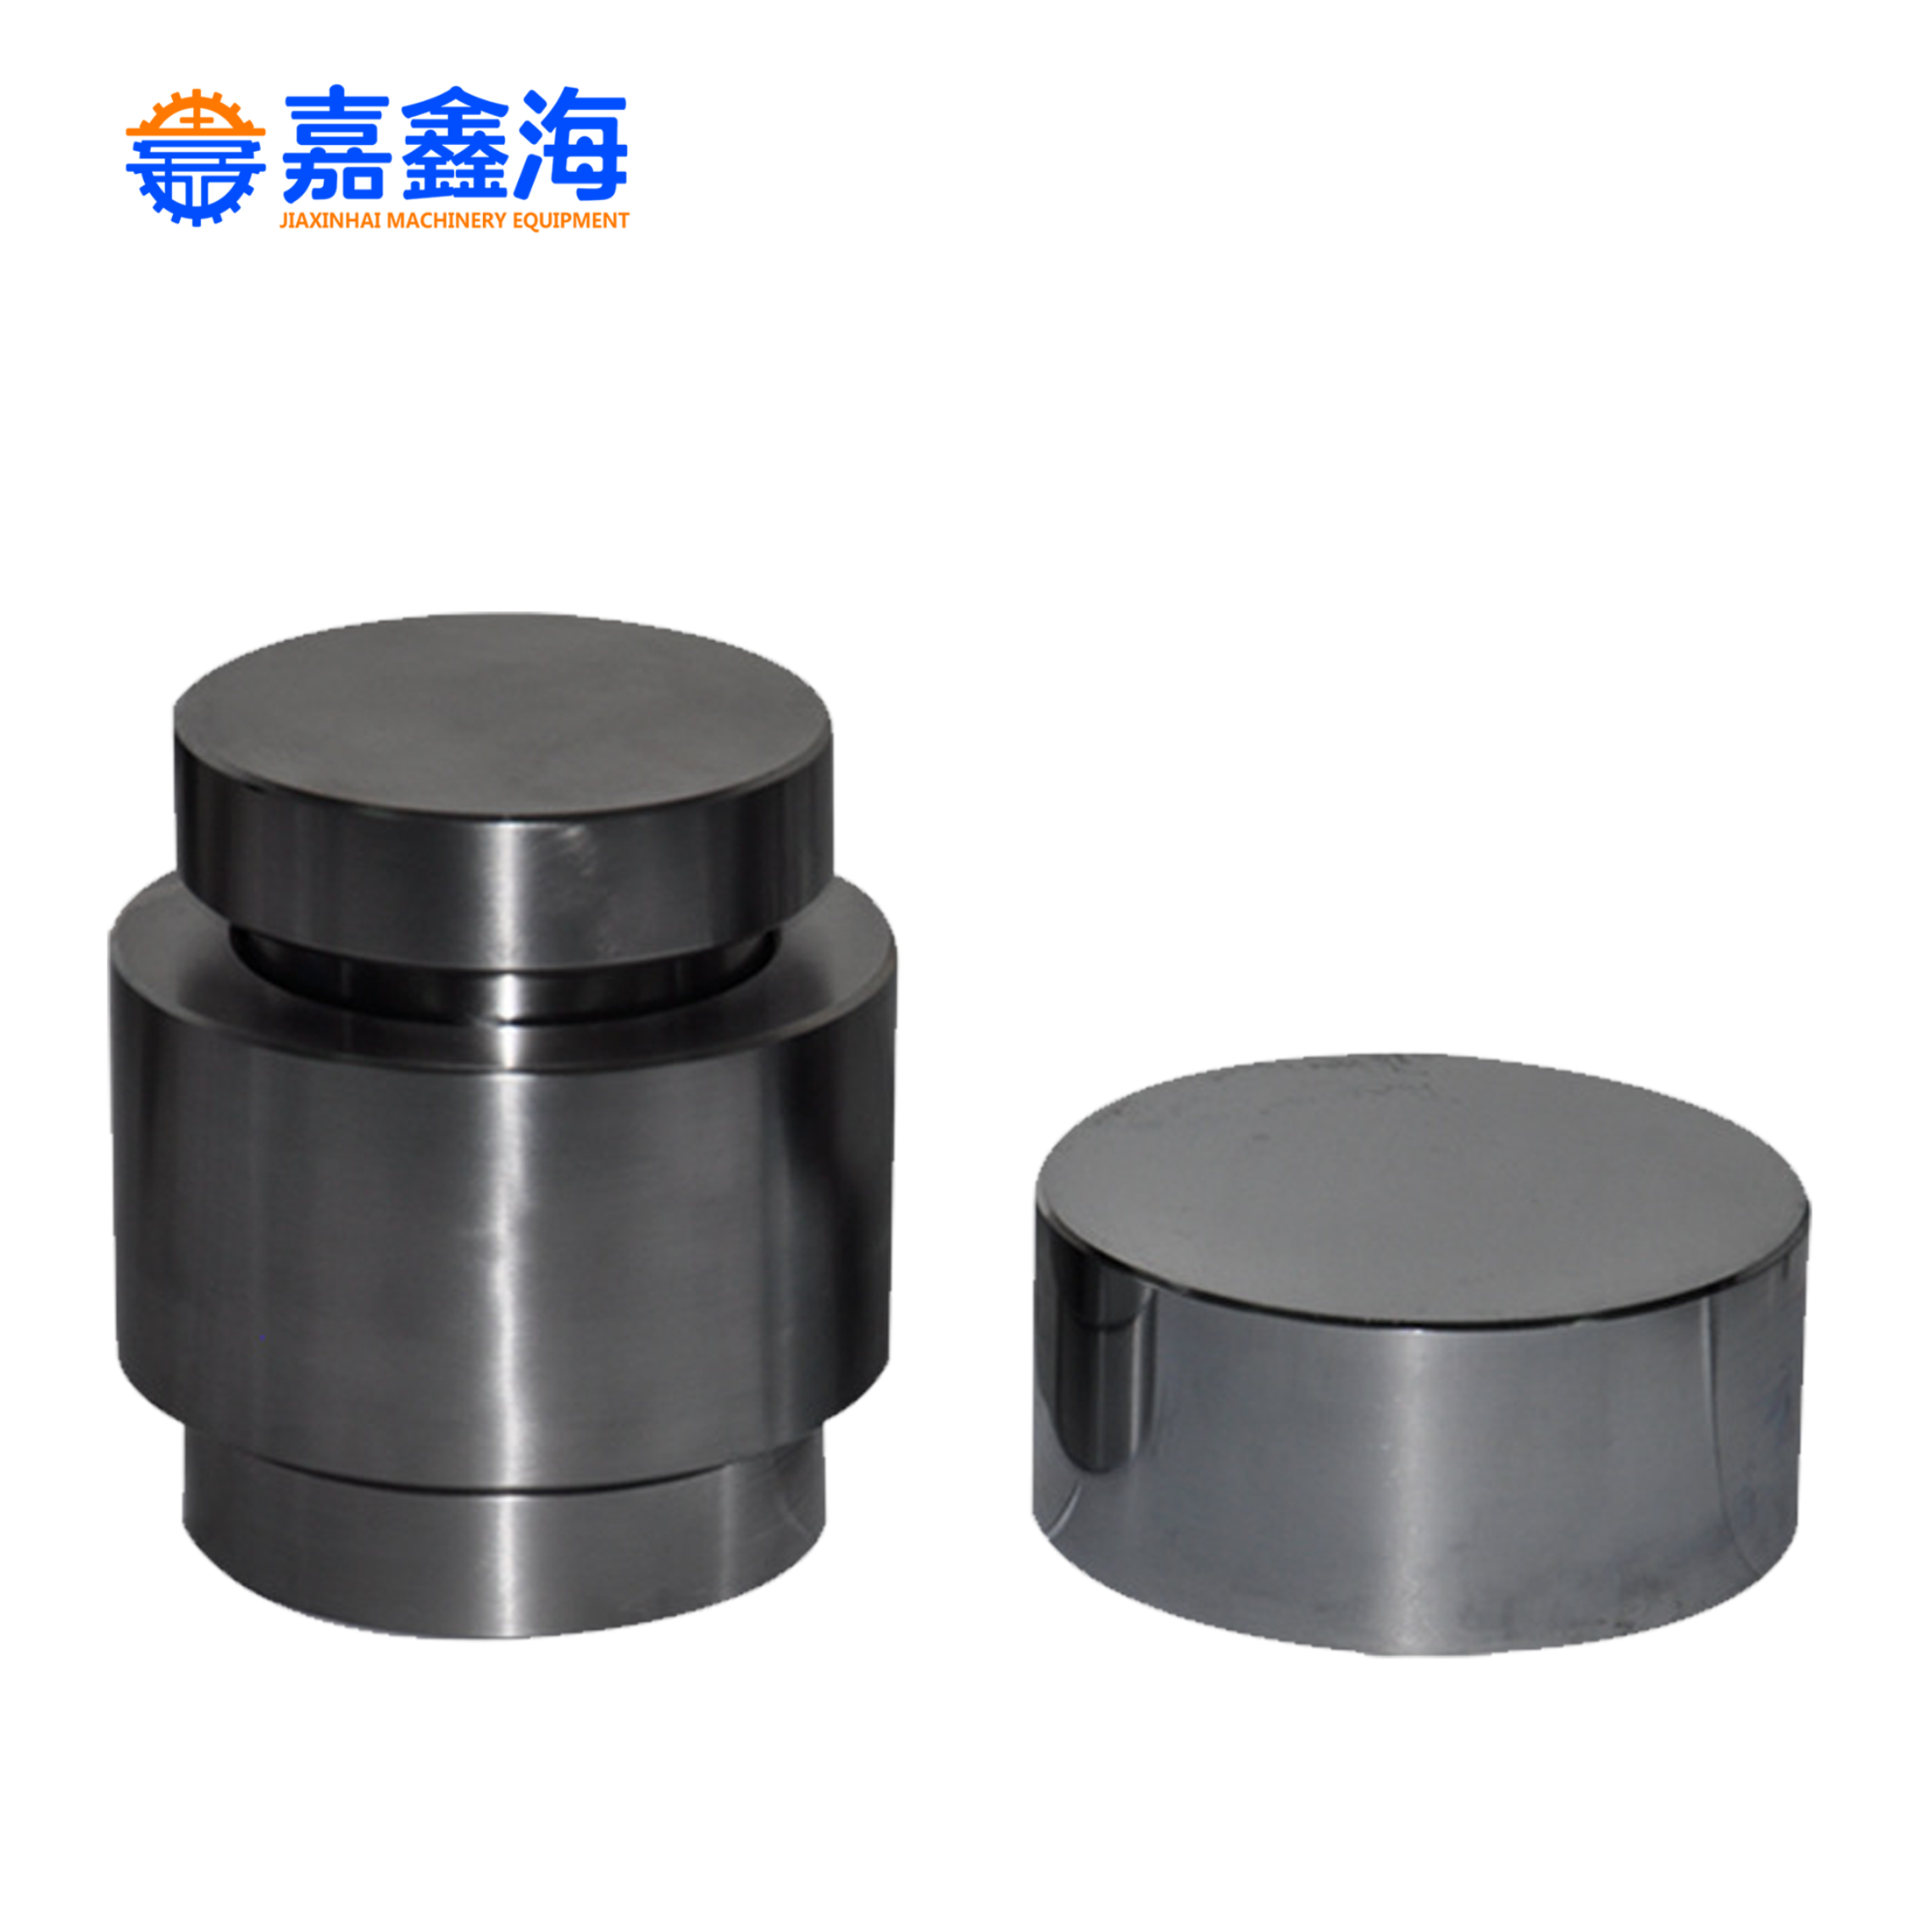 嘉鑫海 81-90mm 圆柱形压片模具产品